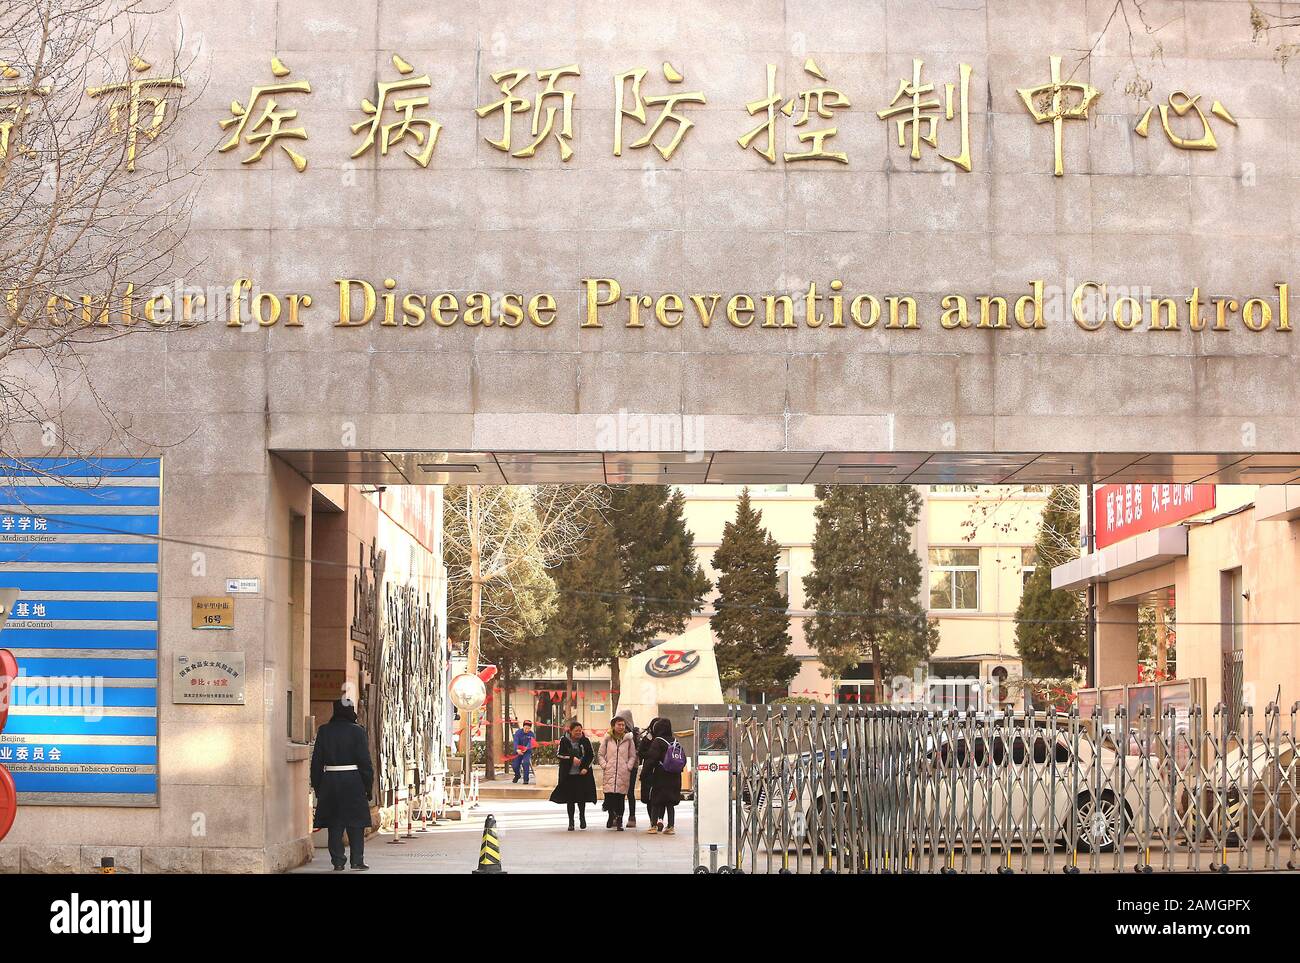 Pékin, Chine. 13 janvier 2020. Un centre chinois principal de lutte contre la maladie, de prévention et de recherche est ouvert à Beijing le lundi 13 janvier 2020. En Chine, les autorités sanitaires ont signalé la première mort du pays à cause d'un nouveau type de coronavirus, car le pays s'attelle au boom du voyage du nouvel an lunaire, alors que les inquiétudes suscitaient une possible épidémie similaire à celle du virus du SRAS au début des années 2000. Photo de Stephen Shaver/UPI Credit: UPI/Alay Live News Banque D'Images